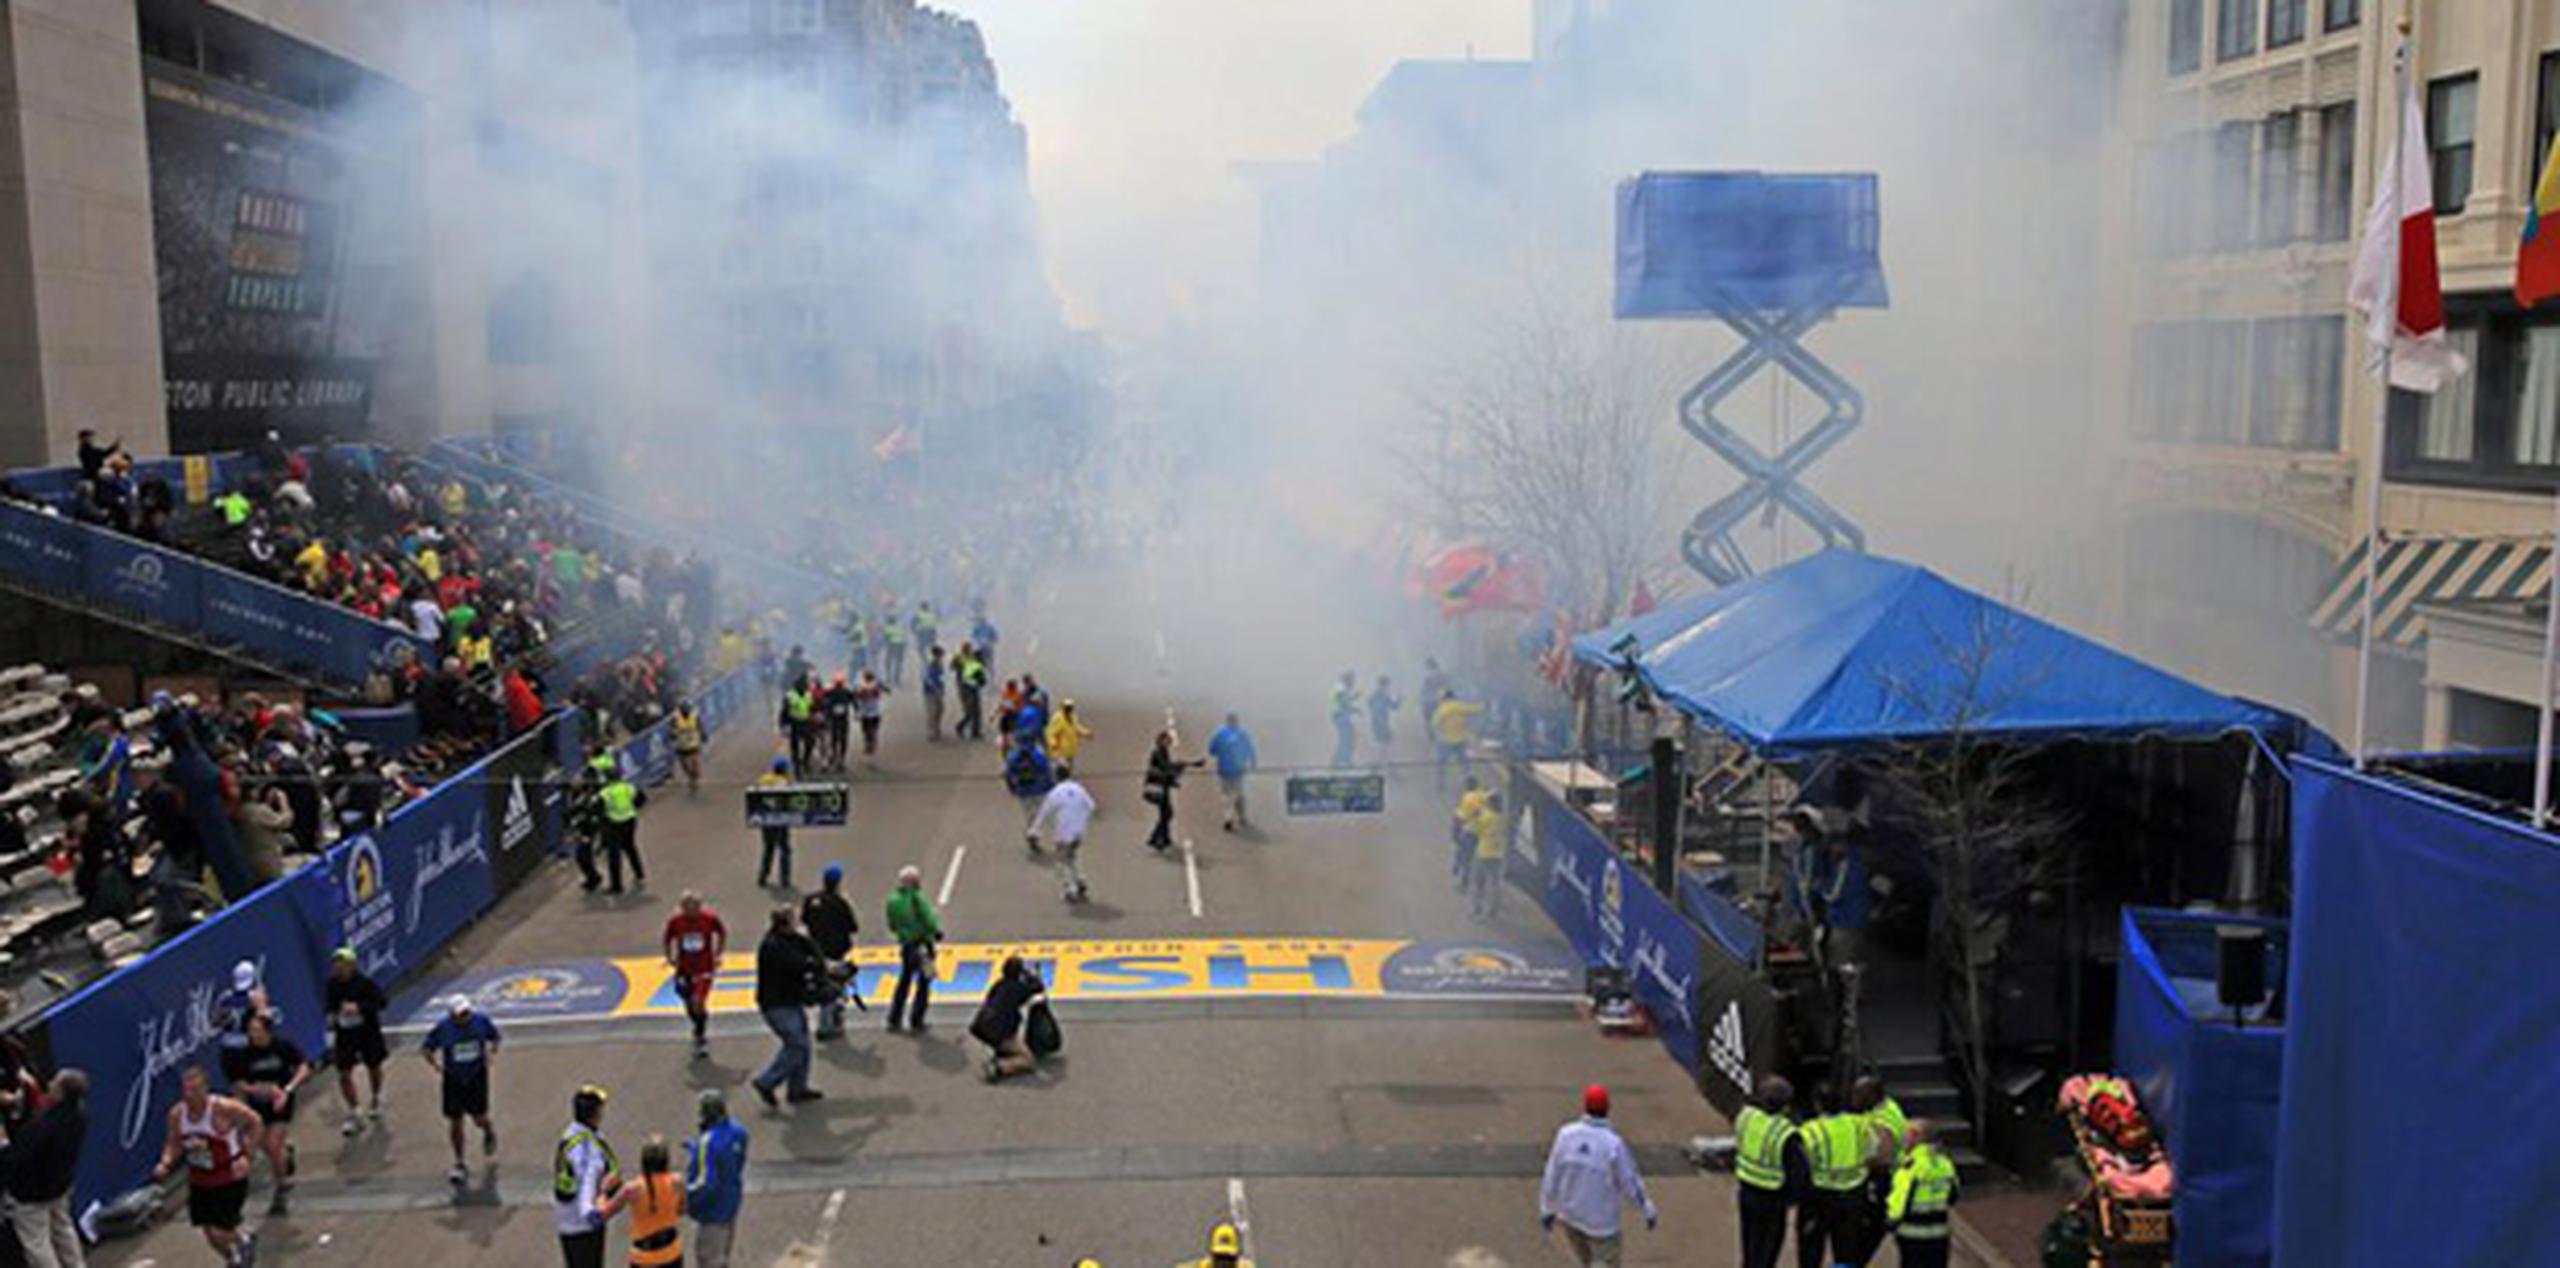 Los organizadores del maratón dijeron en su página de Facebook que los estallidos fueron ocasionados por bombas. (AP)